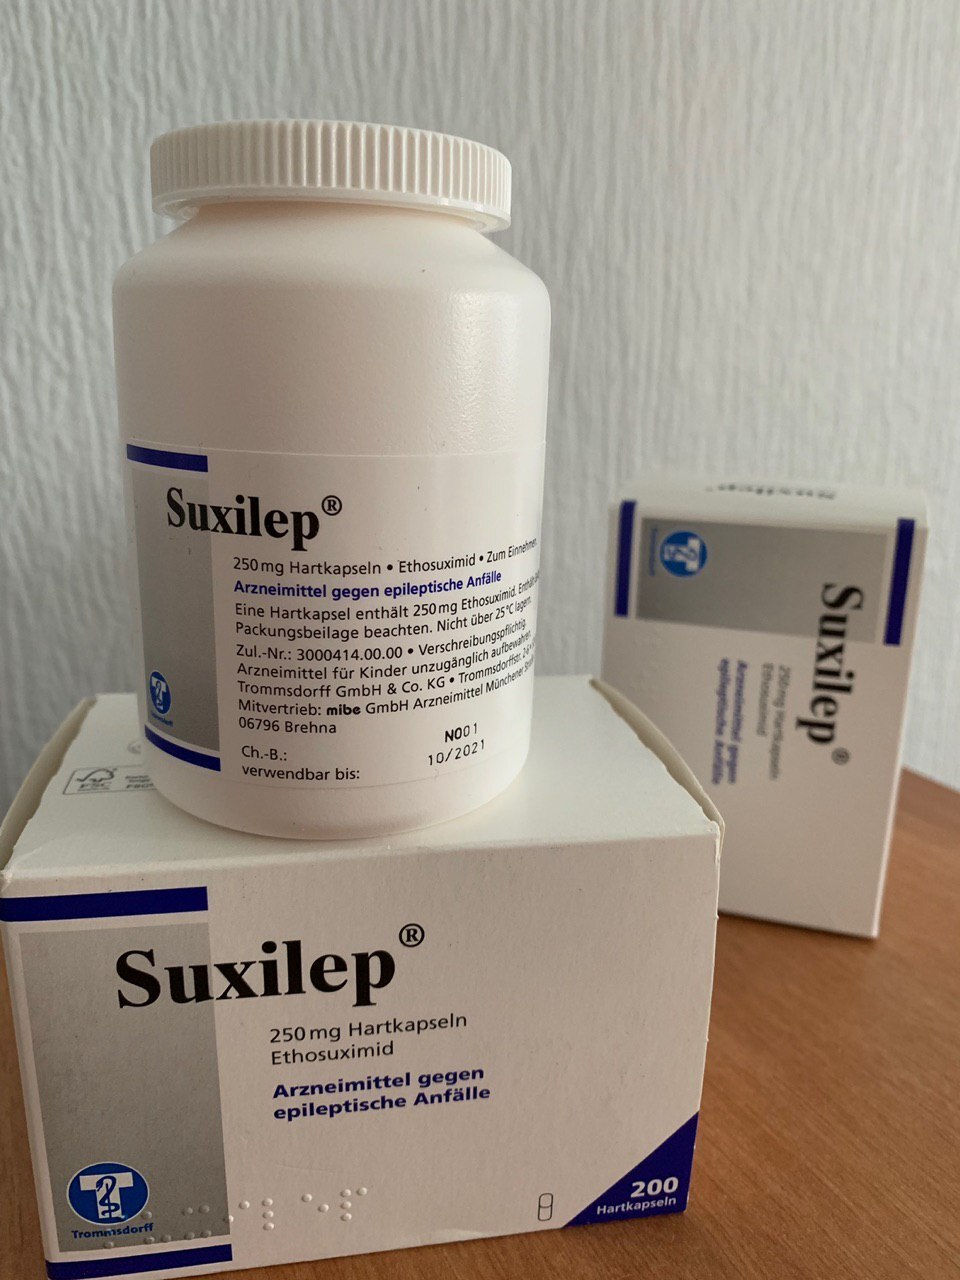 Купить Suxilep (Суксилеп) по лучшей цене с доставкой из Германии в Украину